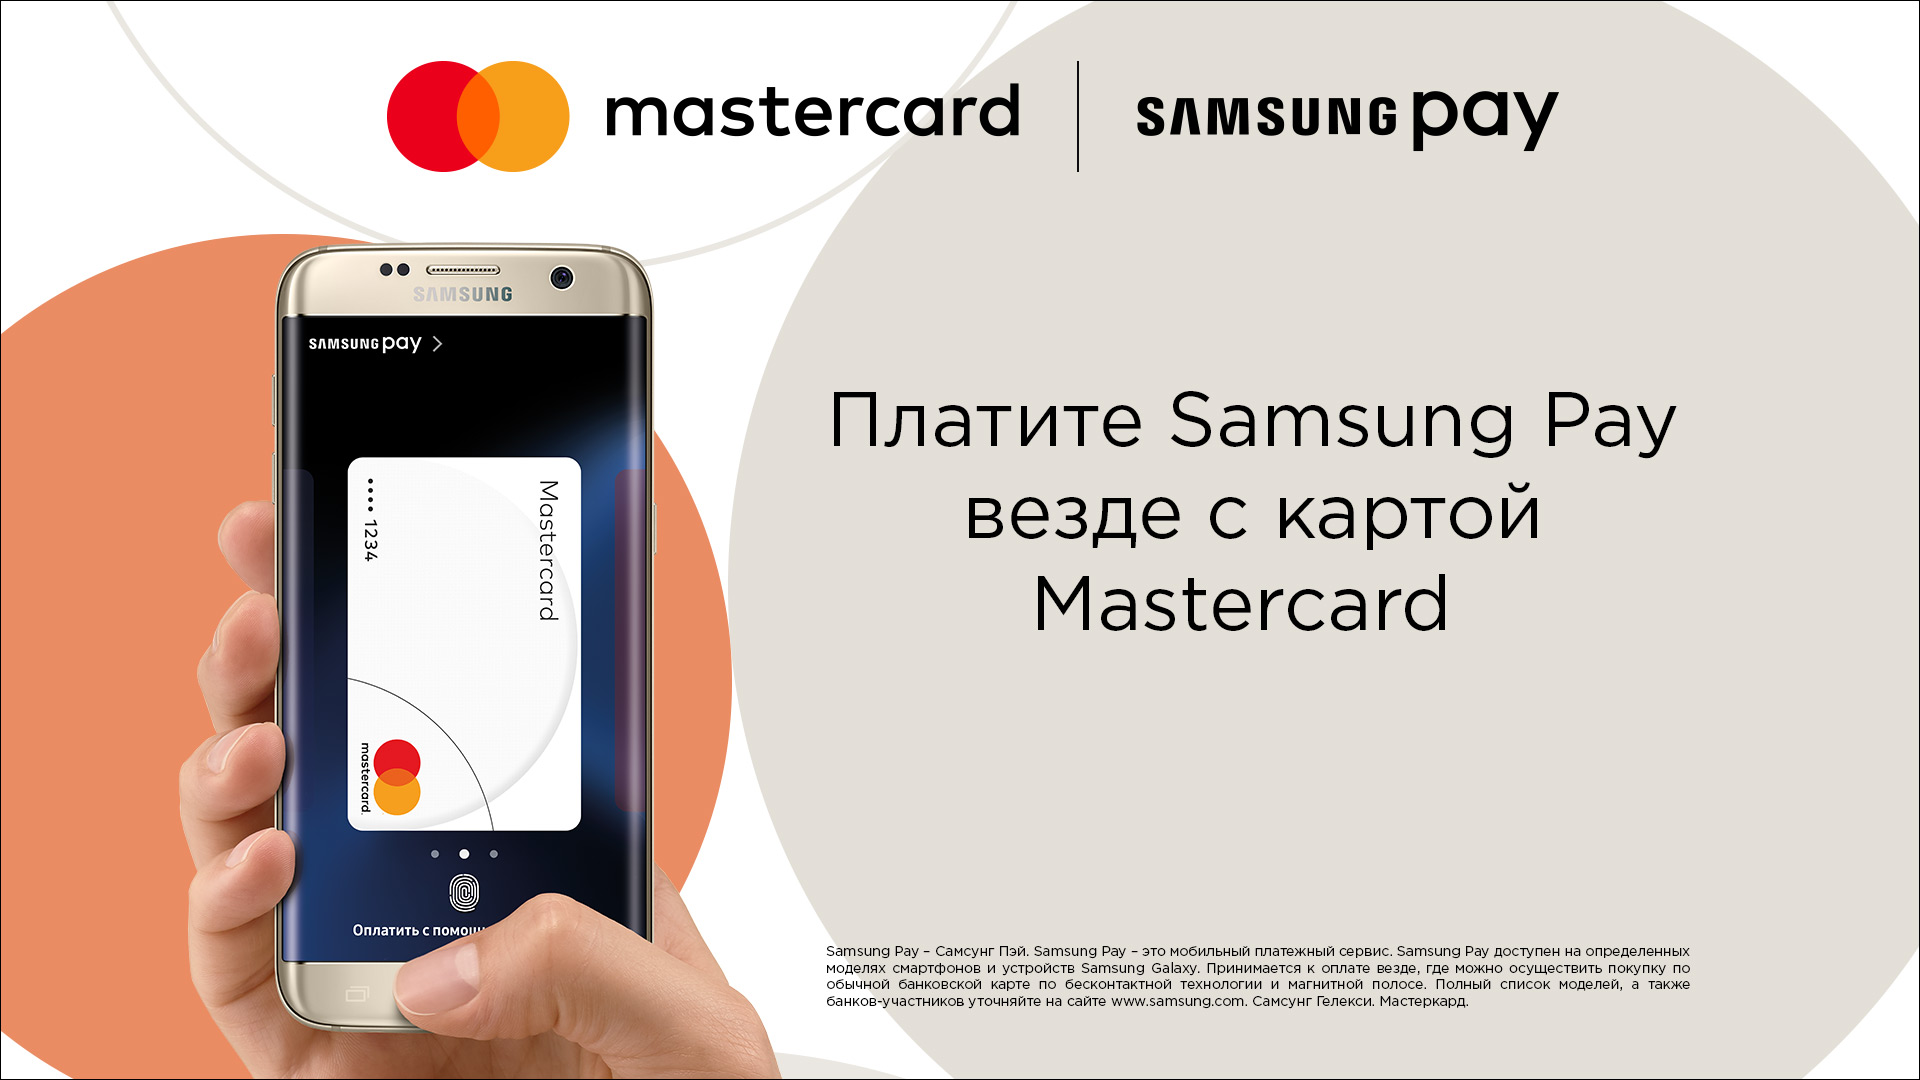 Приложение вместо самсунг пей. Samsung pay реклама. Карта Samsung pay. Samsung pay технология. MASTERCARD Samsung pay.